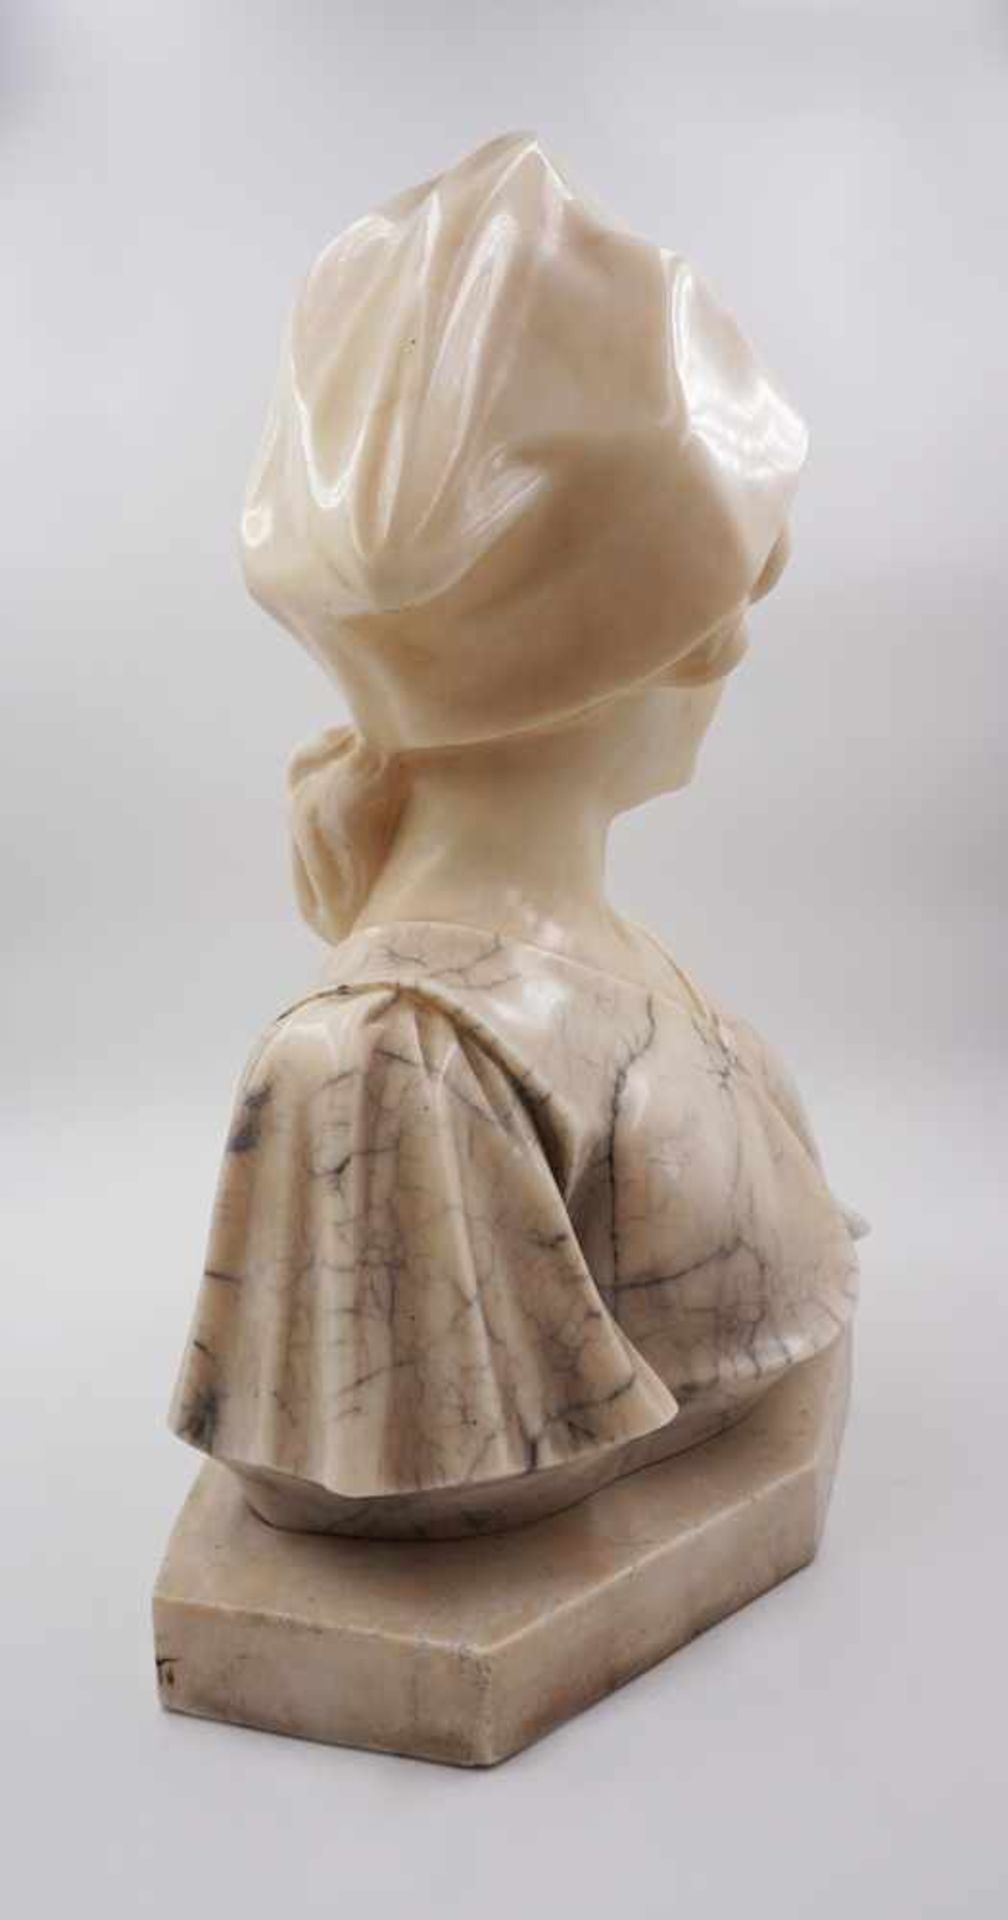 1 Skulptur Marmor "Mädchenbüste mit Tuch" wohl um 1900 signiert A. GENNAY - Bild 2 aus 3